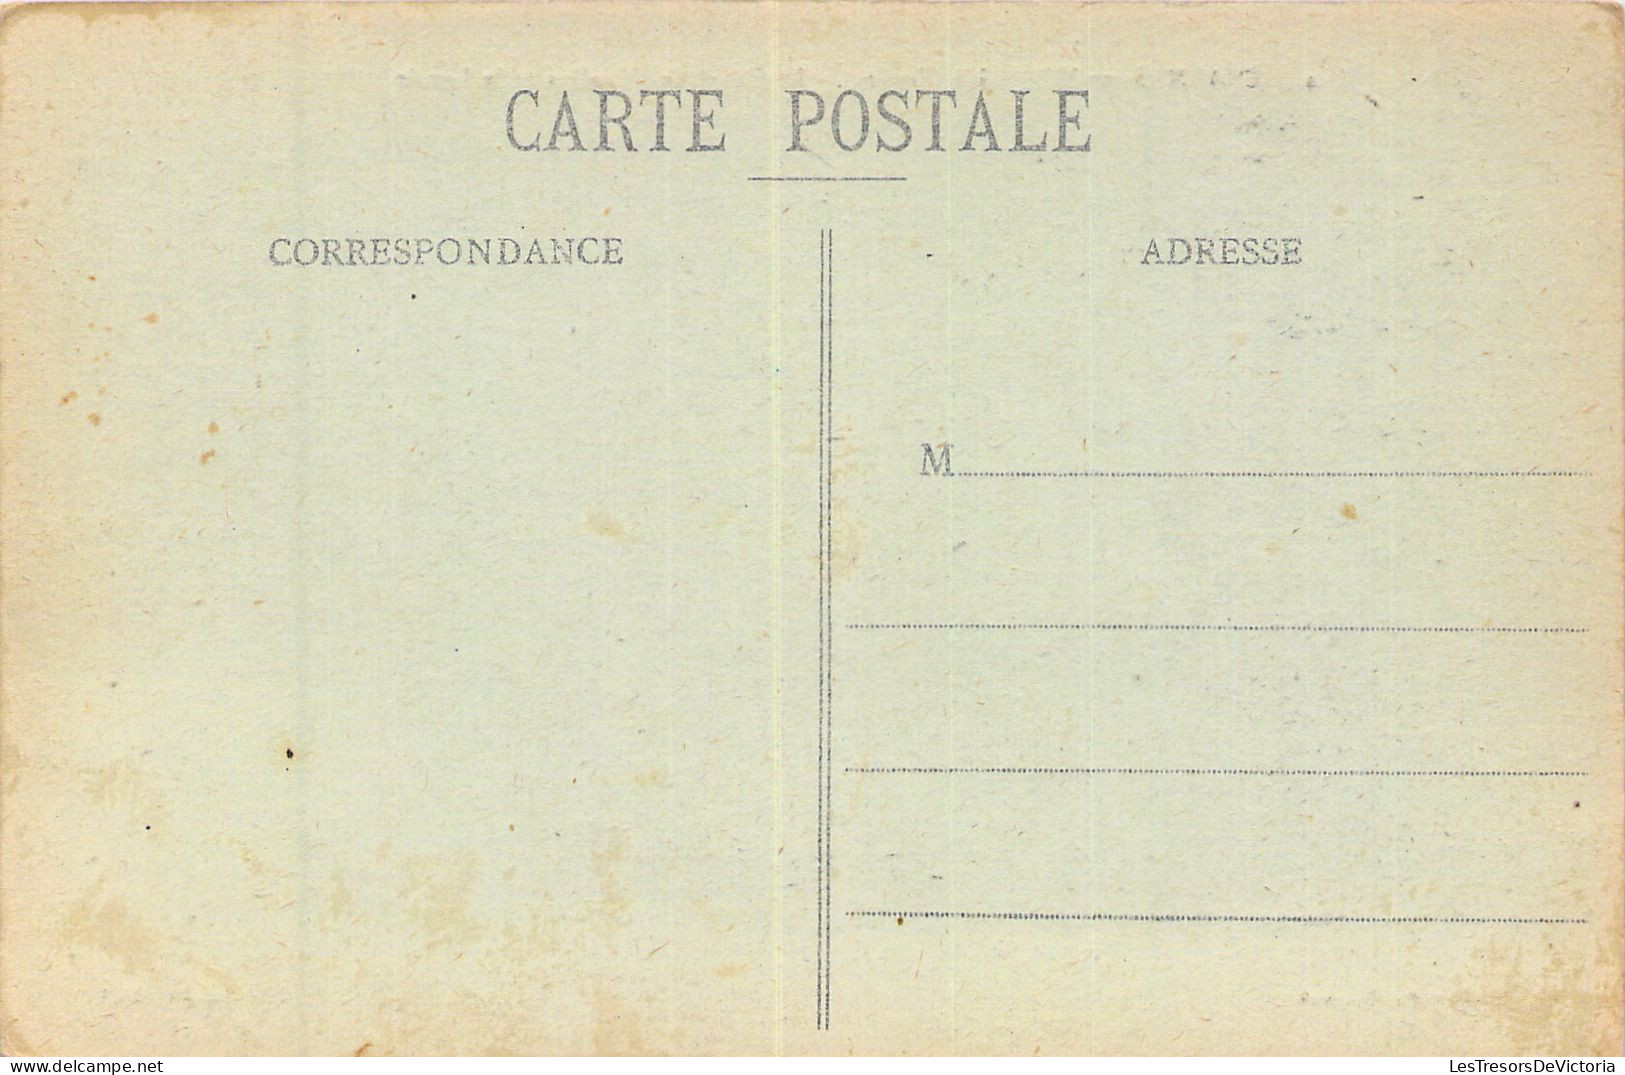 FRANCE - 88 - CHARMES - Le Canal Des Moulins Et Le Lavoir - Carte Postale Ancienne - Charmes